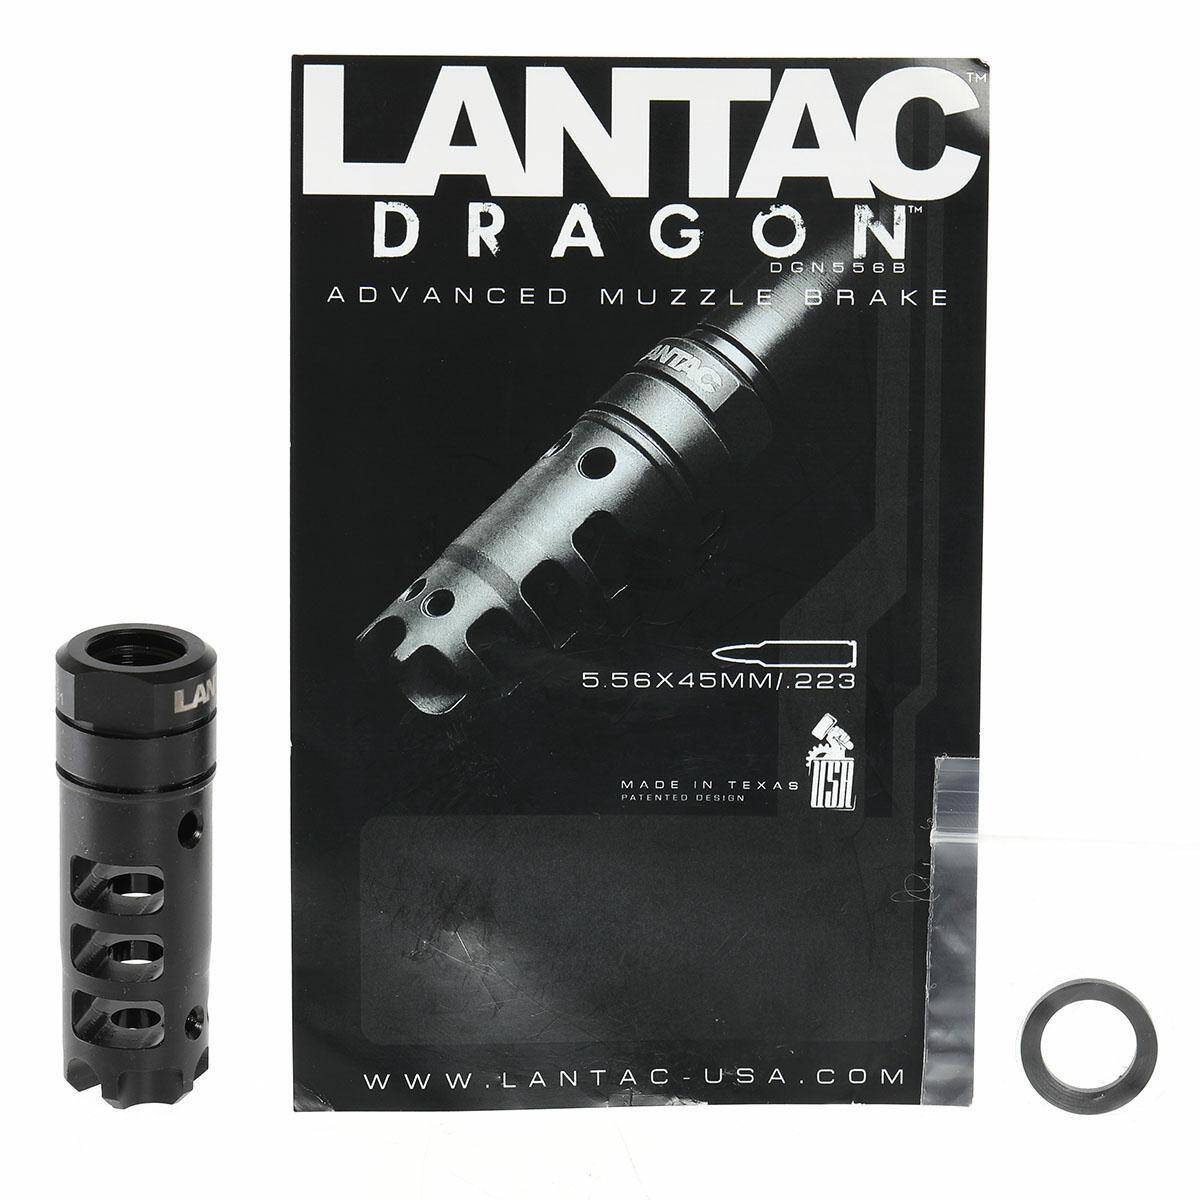 LANTAC Dragon Muzzle Break 1/2-28